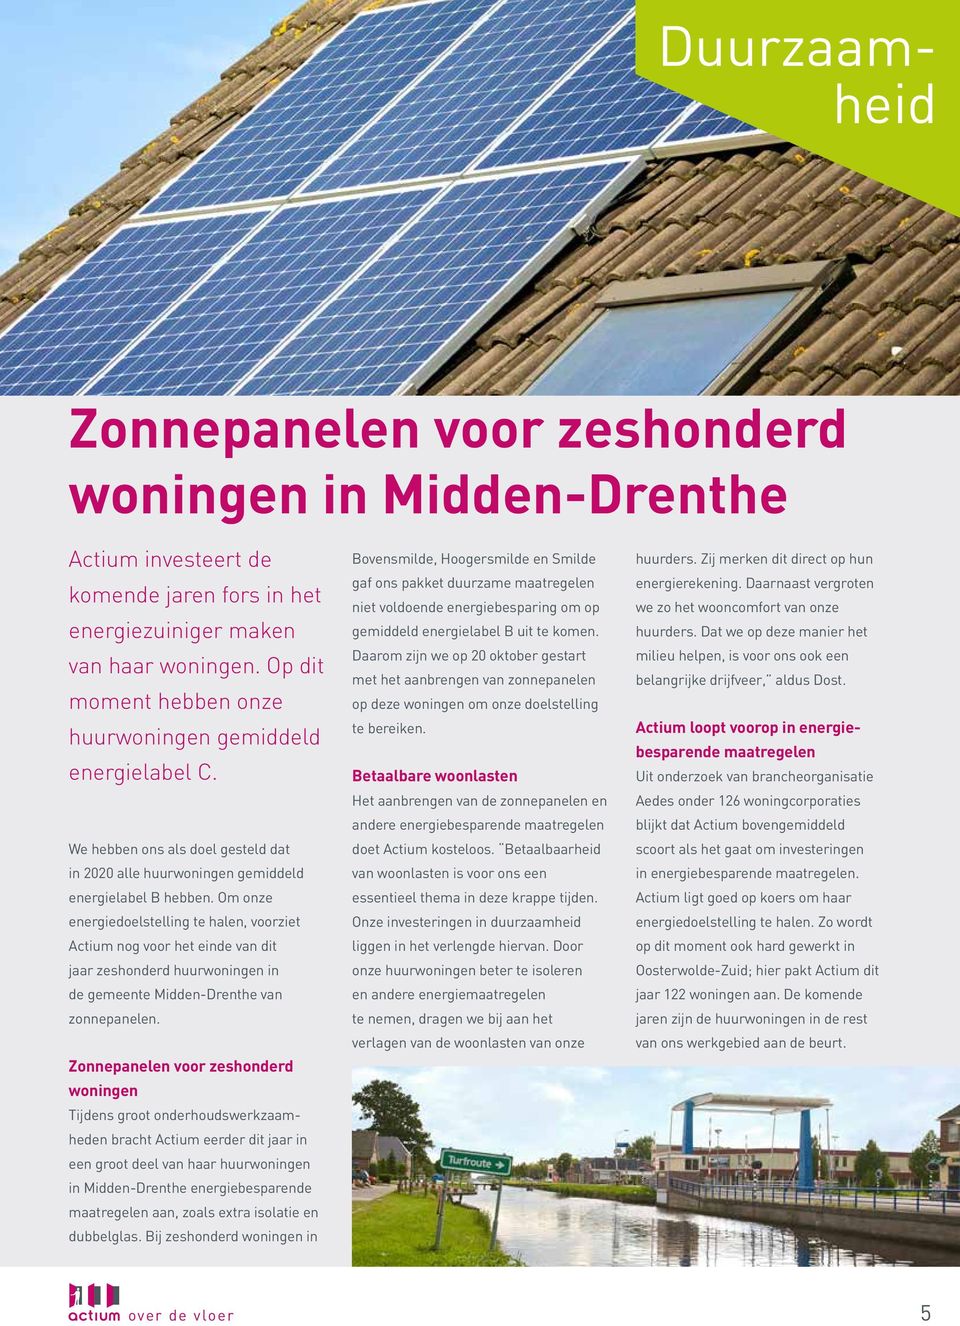 Om onze energiedoelstelling te halen, voorziet Actium nog voor het einde van dit jaar zeshonderd huurwoningen in de gemeente Midden-Drenthe van zonnepanelen.